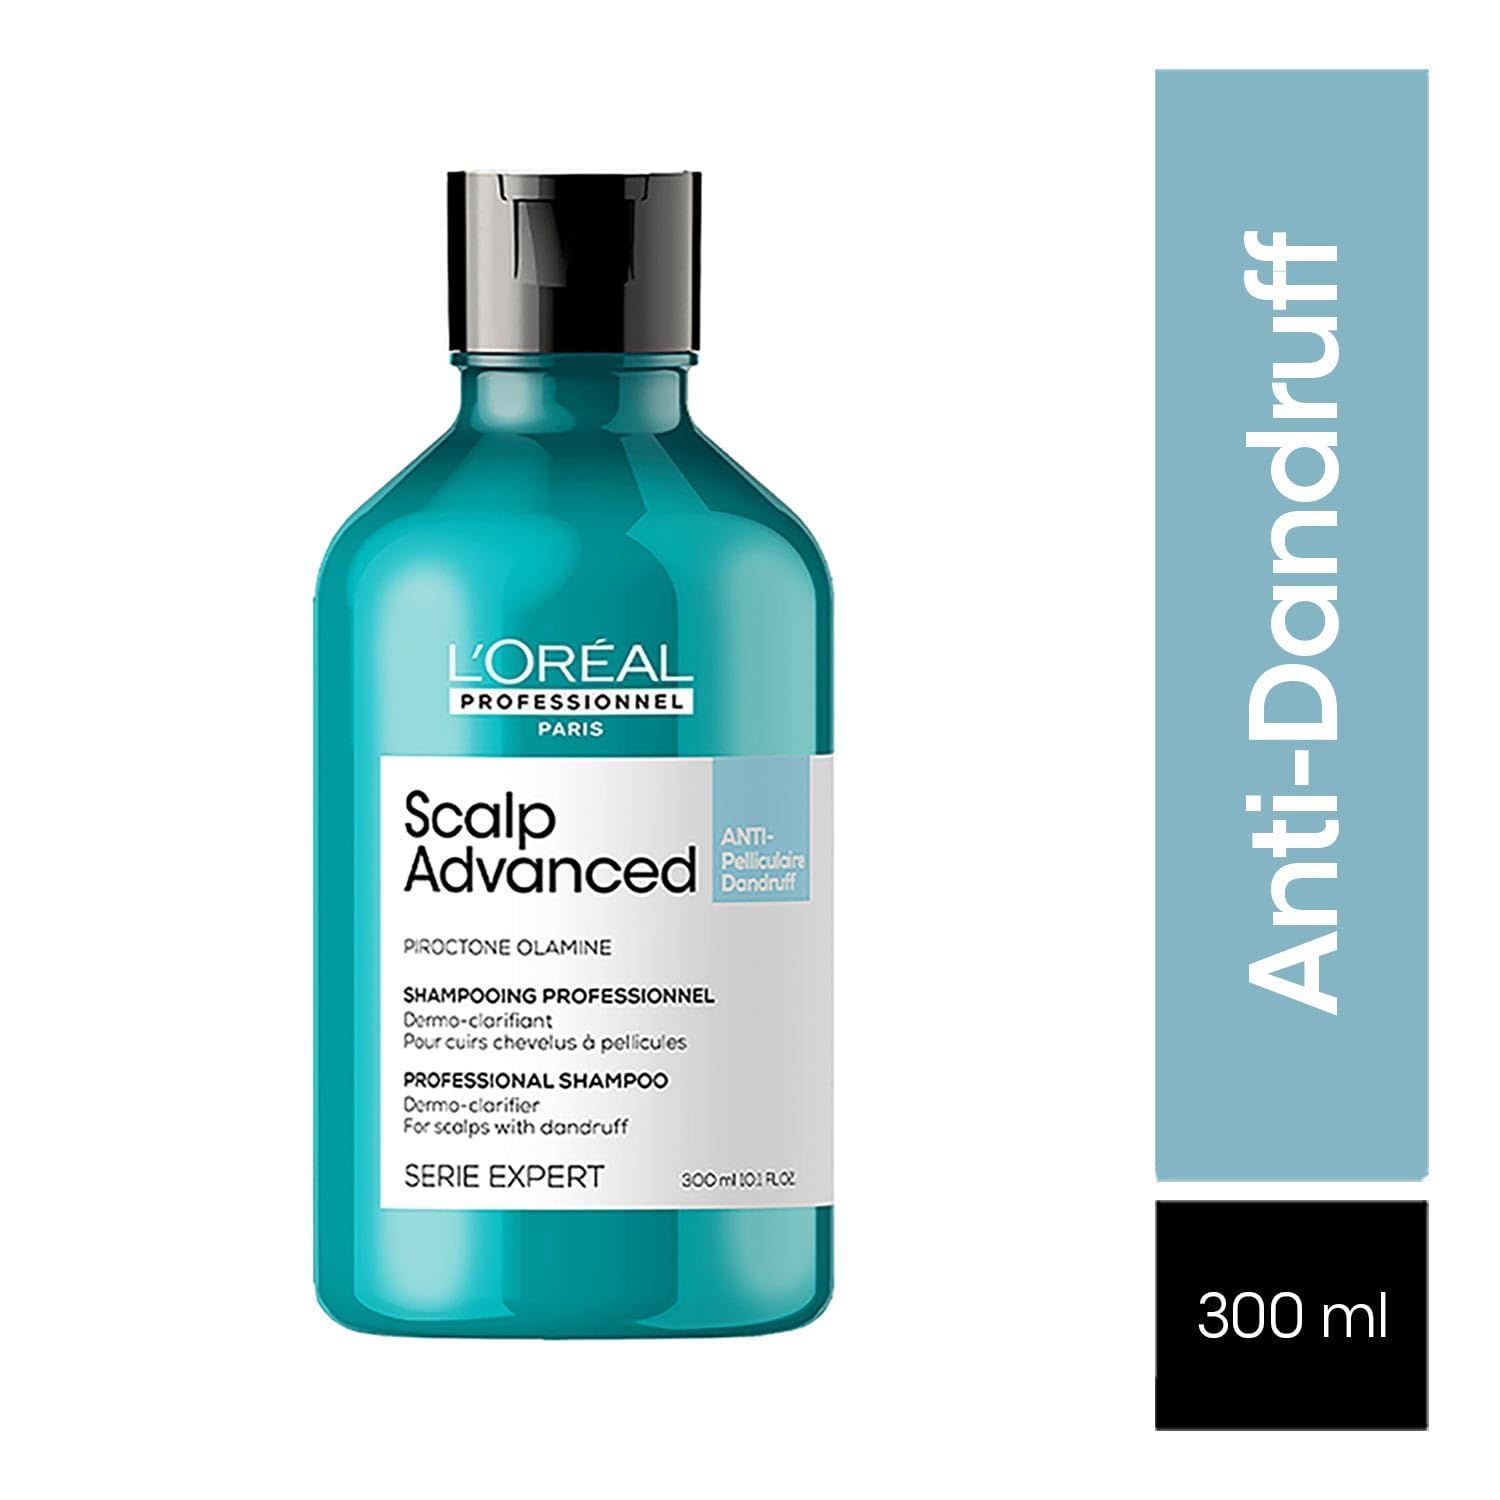 Loreal Professionnel Paris Scalp Advance Anti Dandruff Shampoo 300 ml L'OREAL PROFESSIONNEL